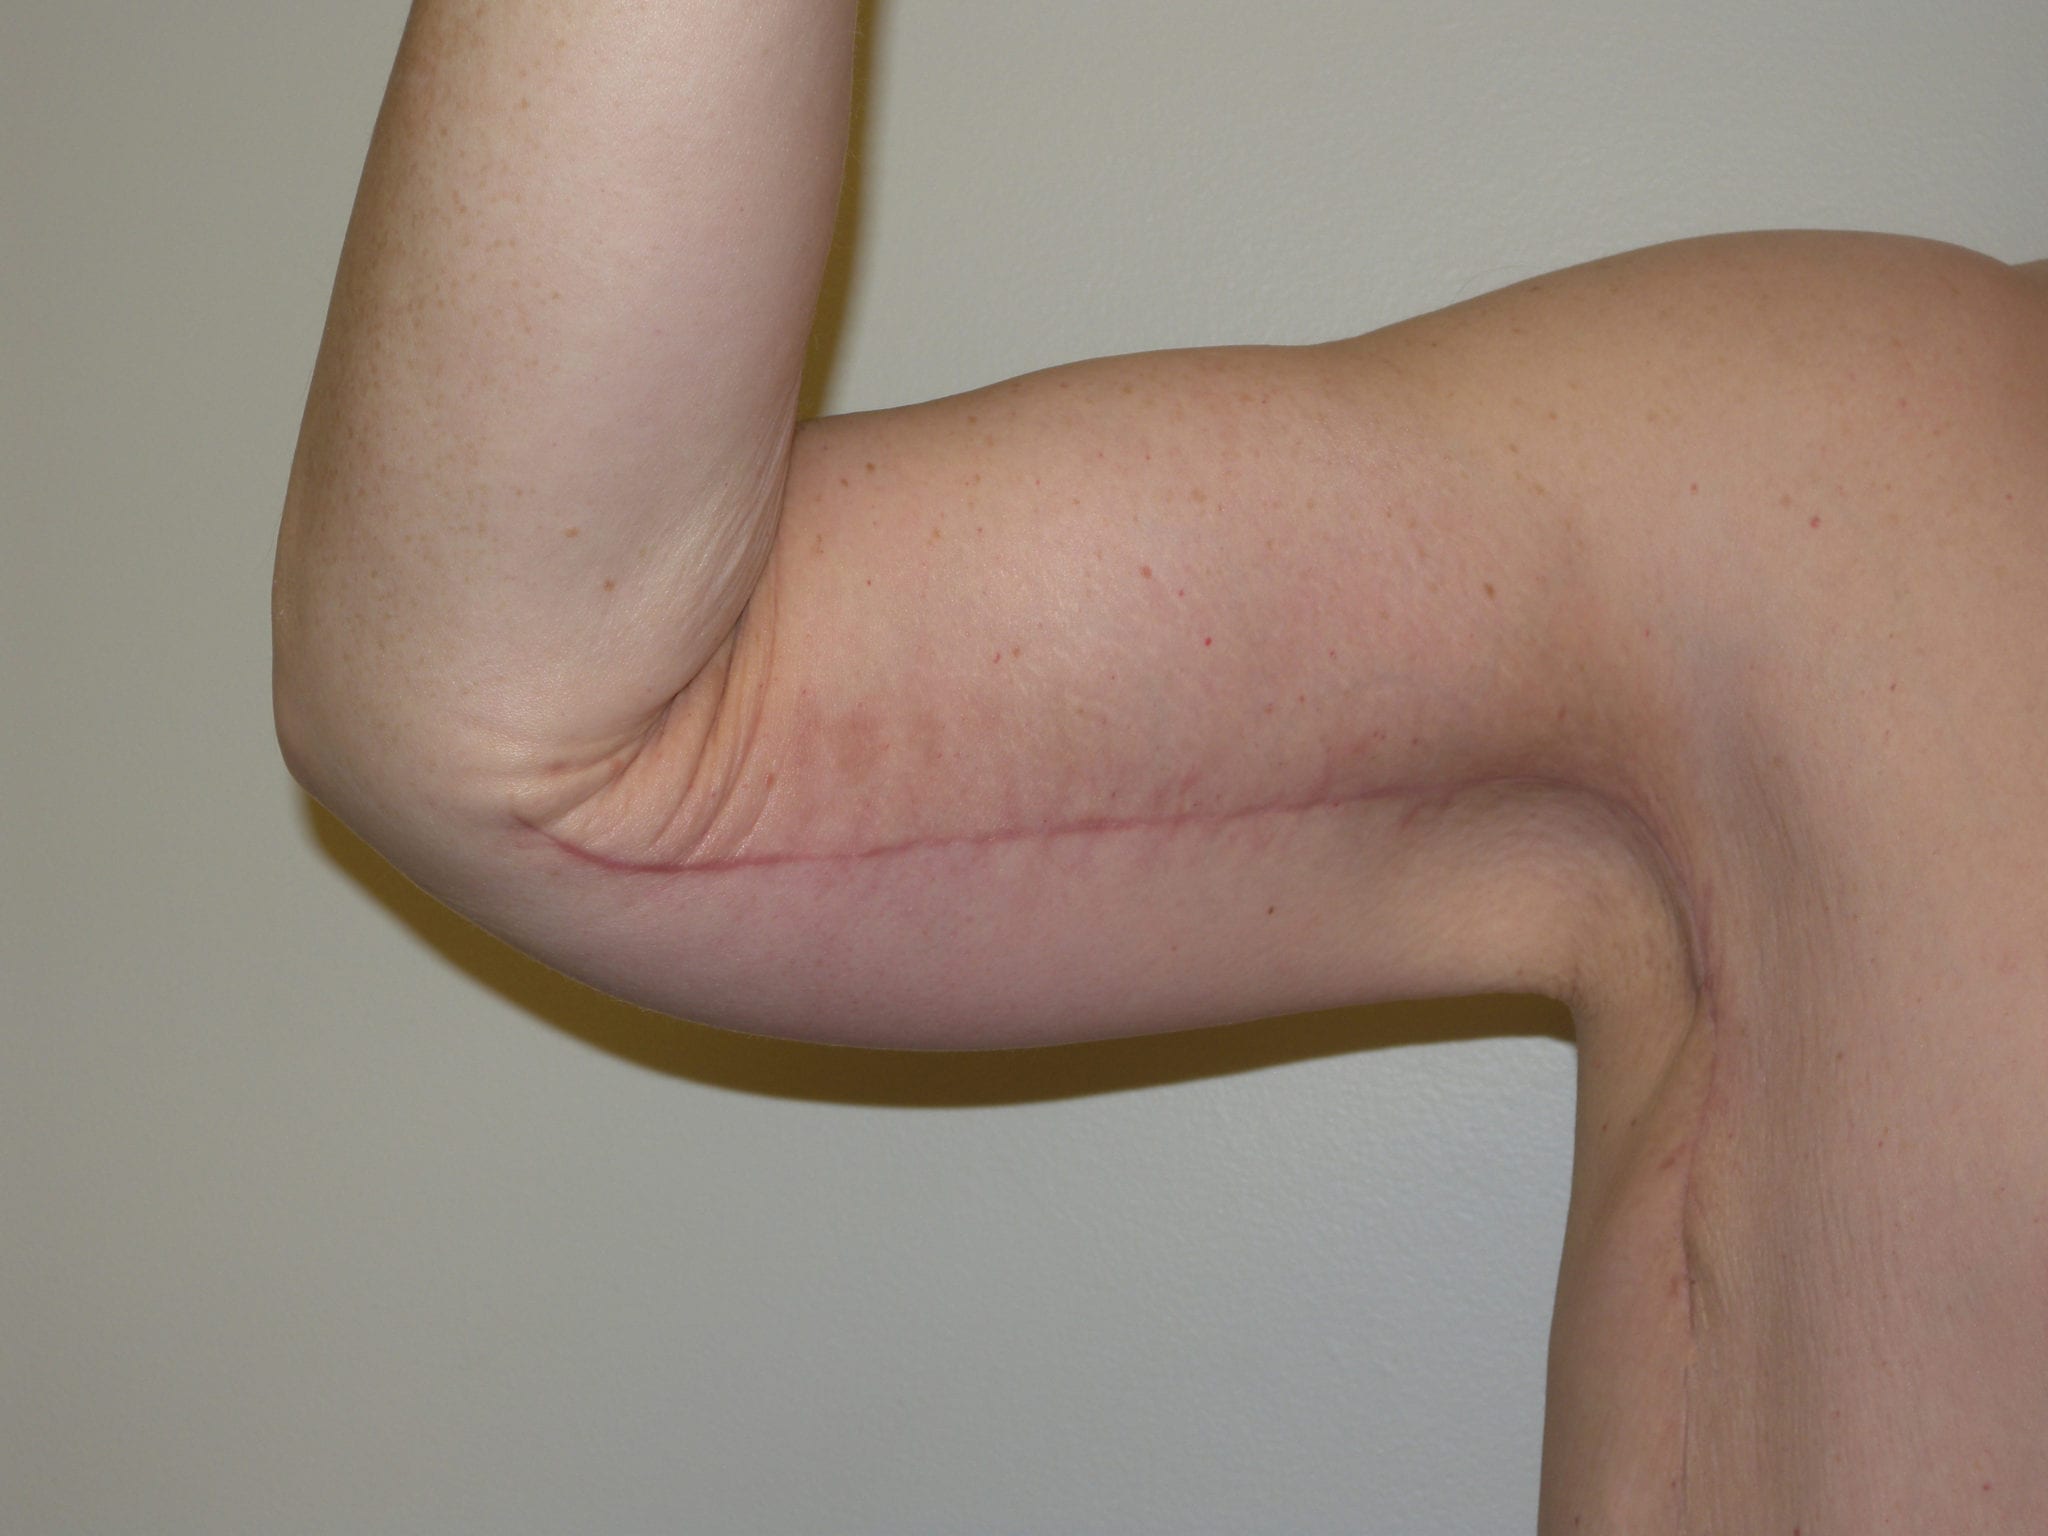 Arm Lift Patient Photo - Case 2501 - after view